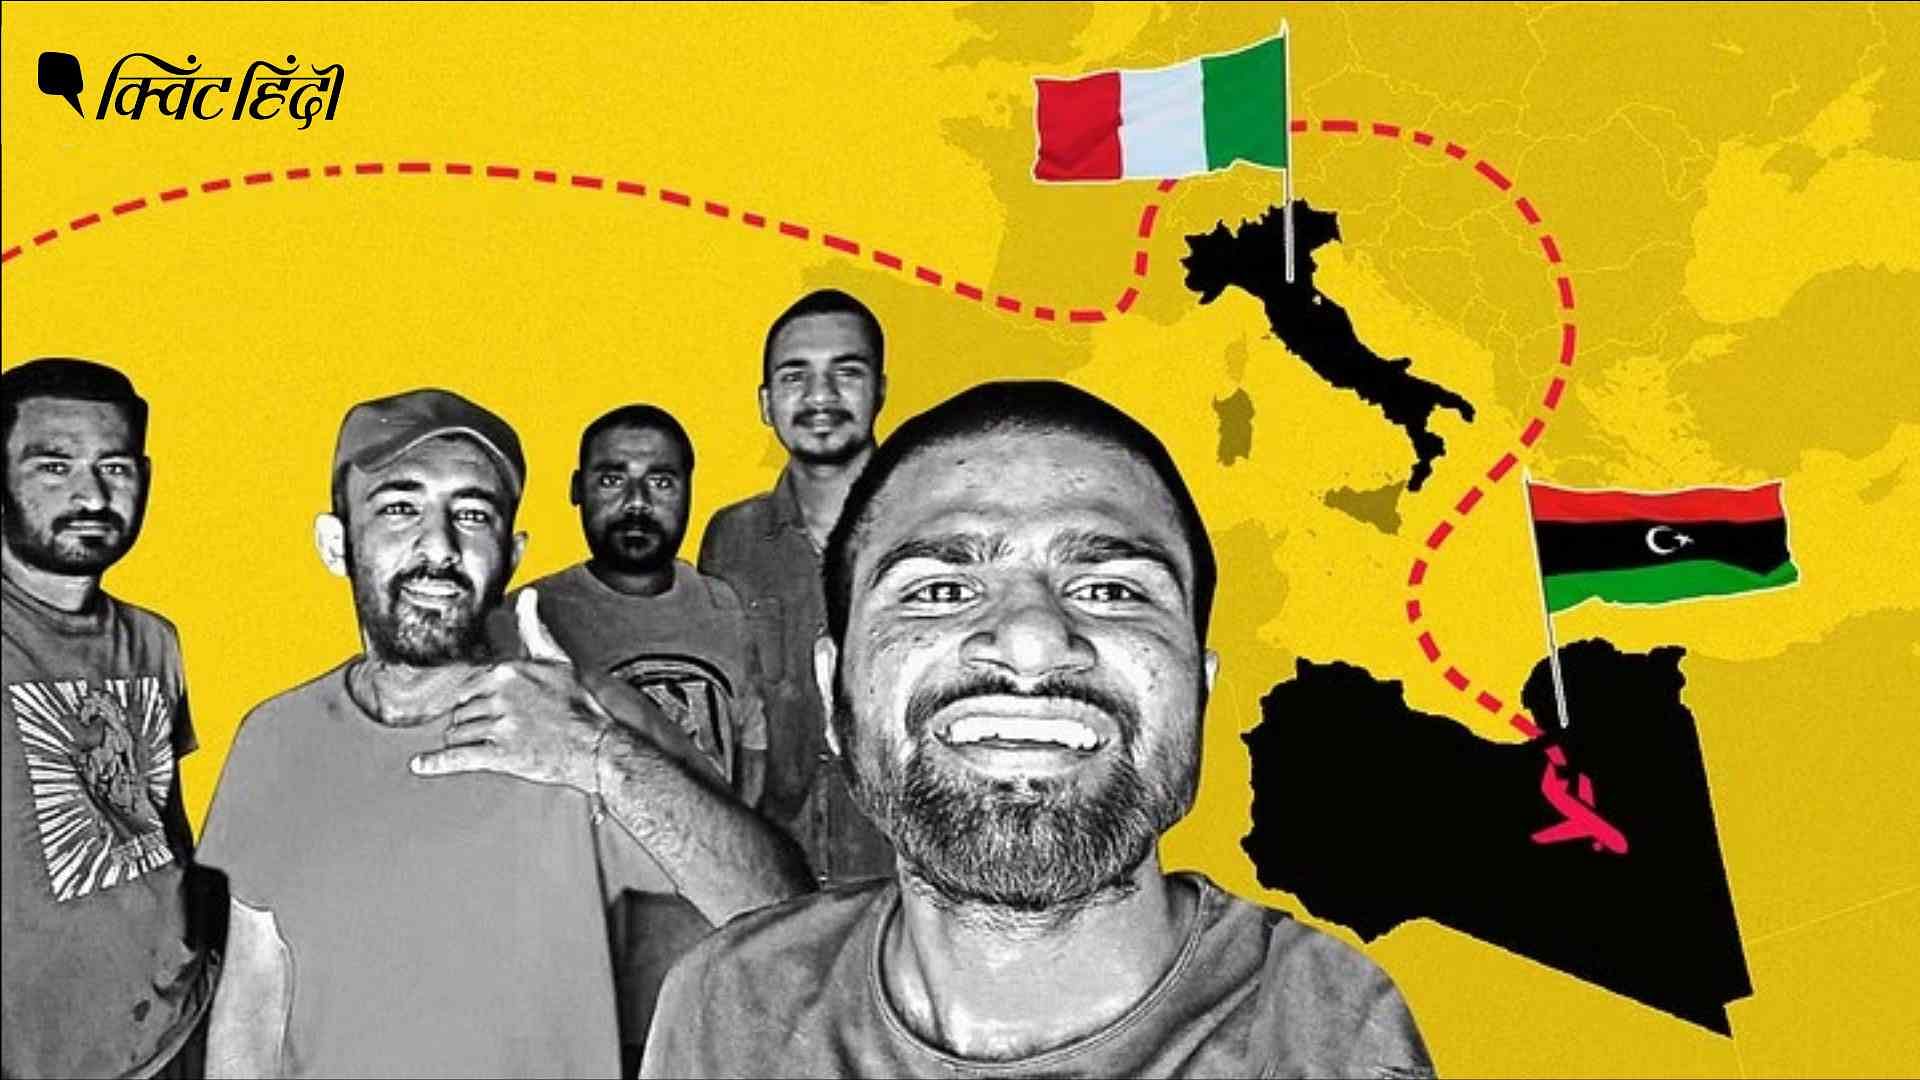 <div class="paragraphs"><p>'कृपया मेरे भाई को वापस लाओ': इटली में नौकरी का वादा, लीबिया में फंसे 5 भारतीय</p></div>